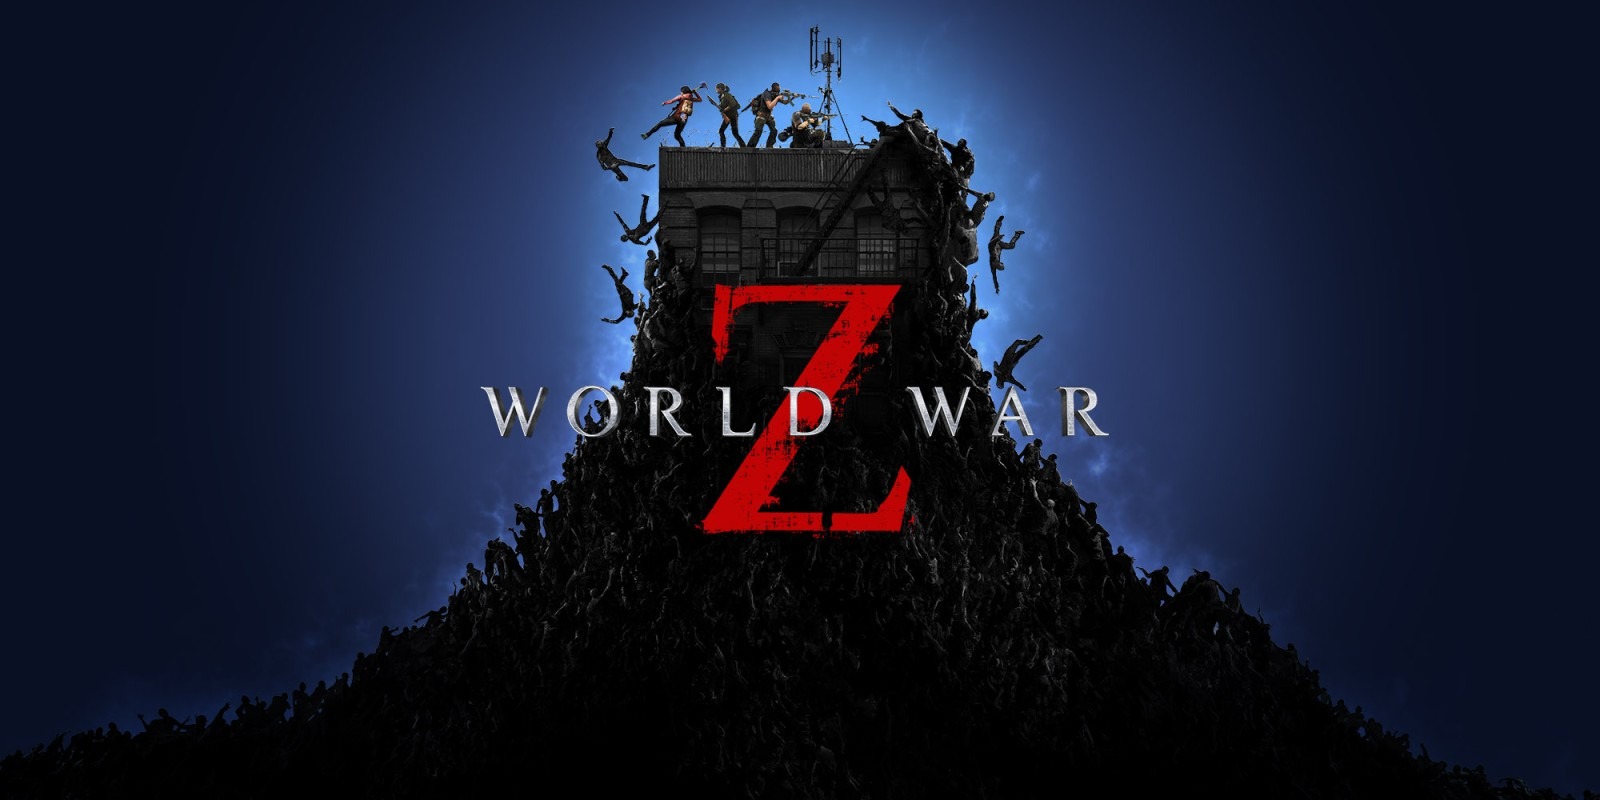 僵尸世界大战 World War Z 官方中文最新版本